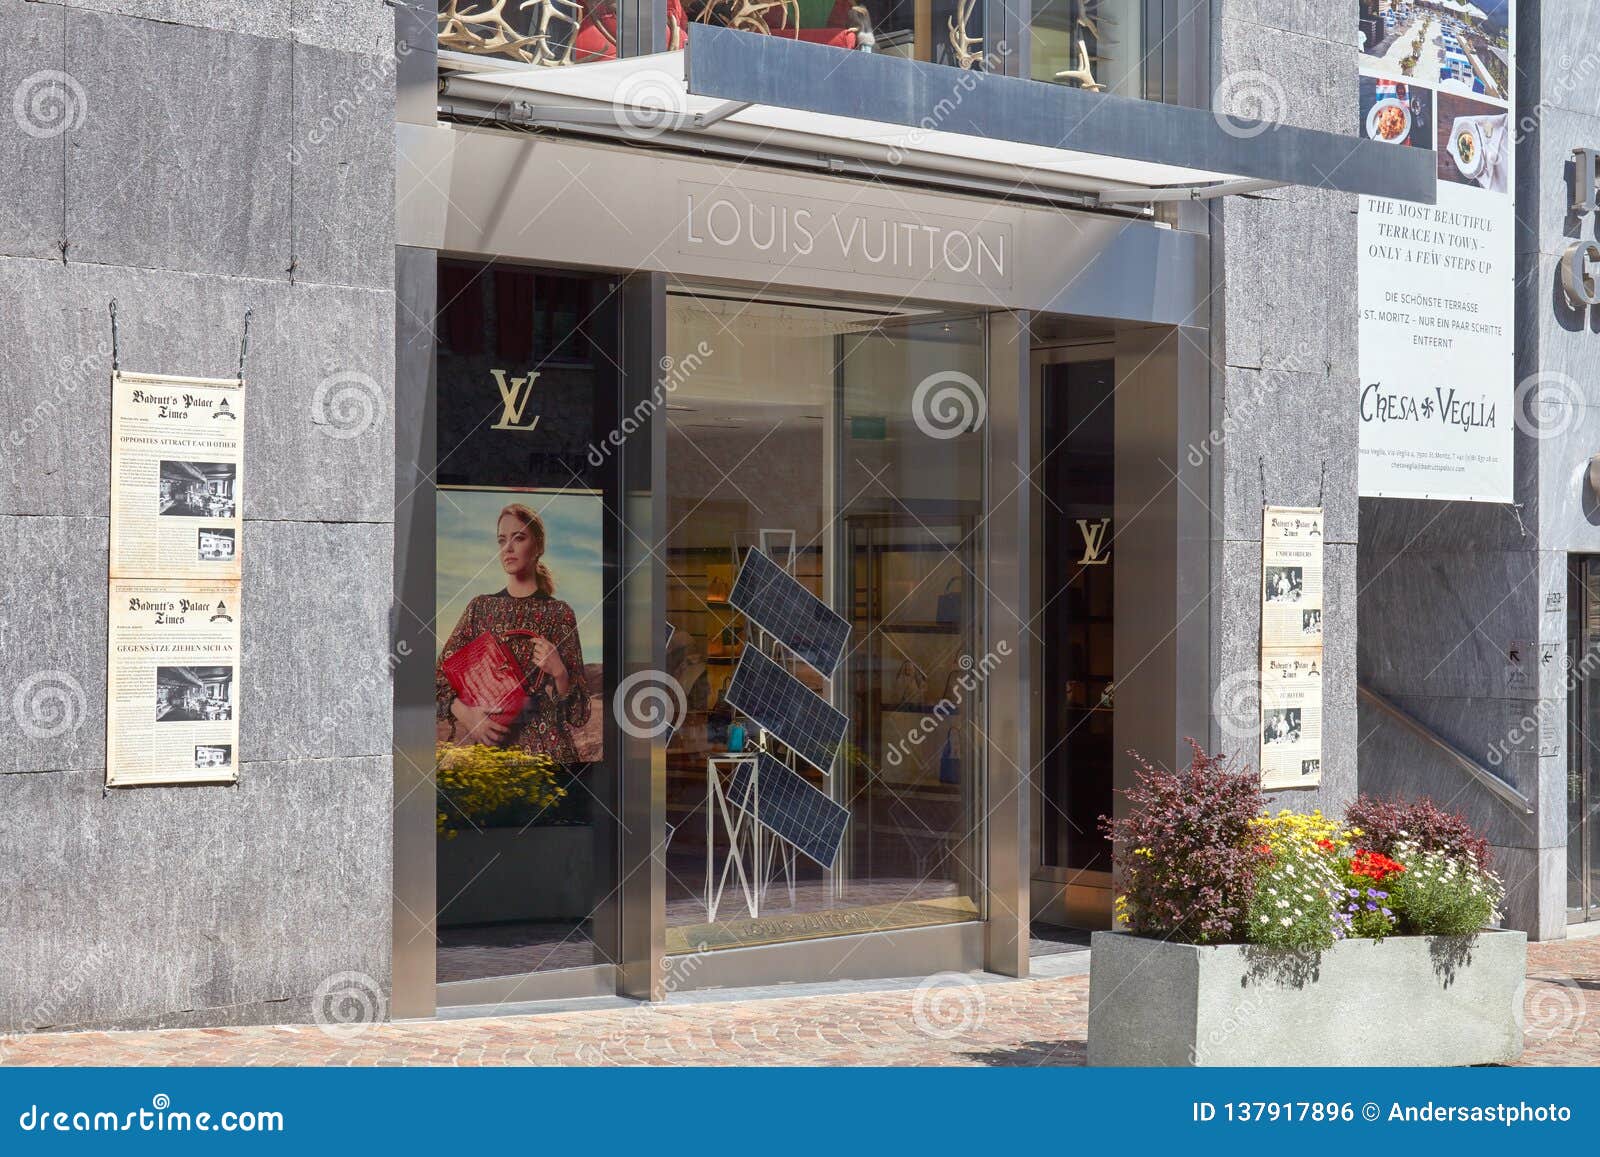 Die ersten Eindrücke des Louis Vuitton Igloo Store in St. Moritz -  madonna24.at